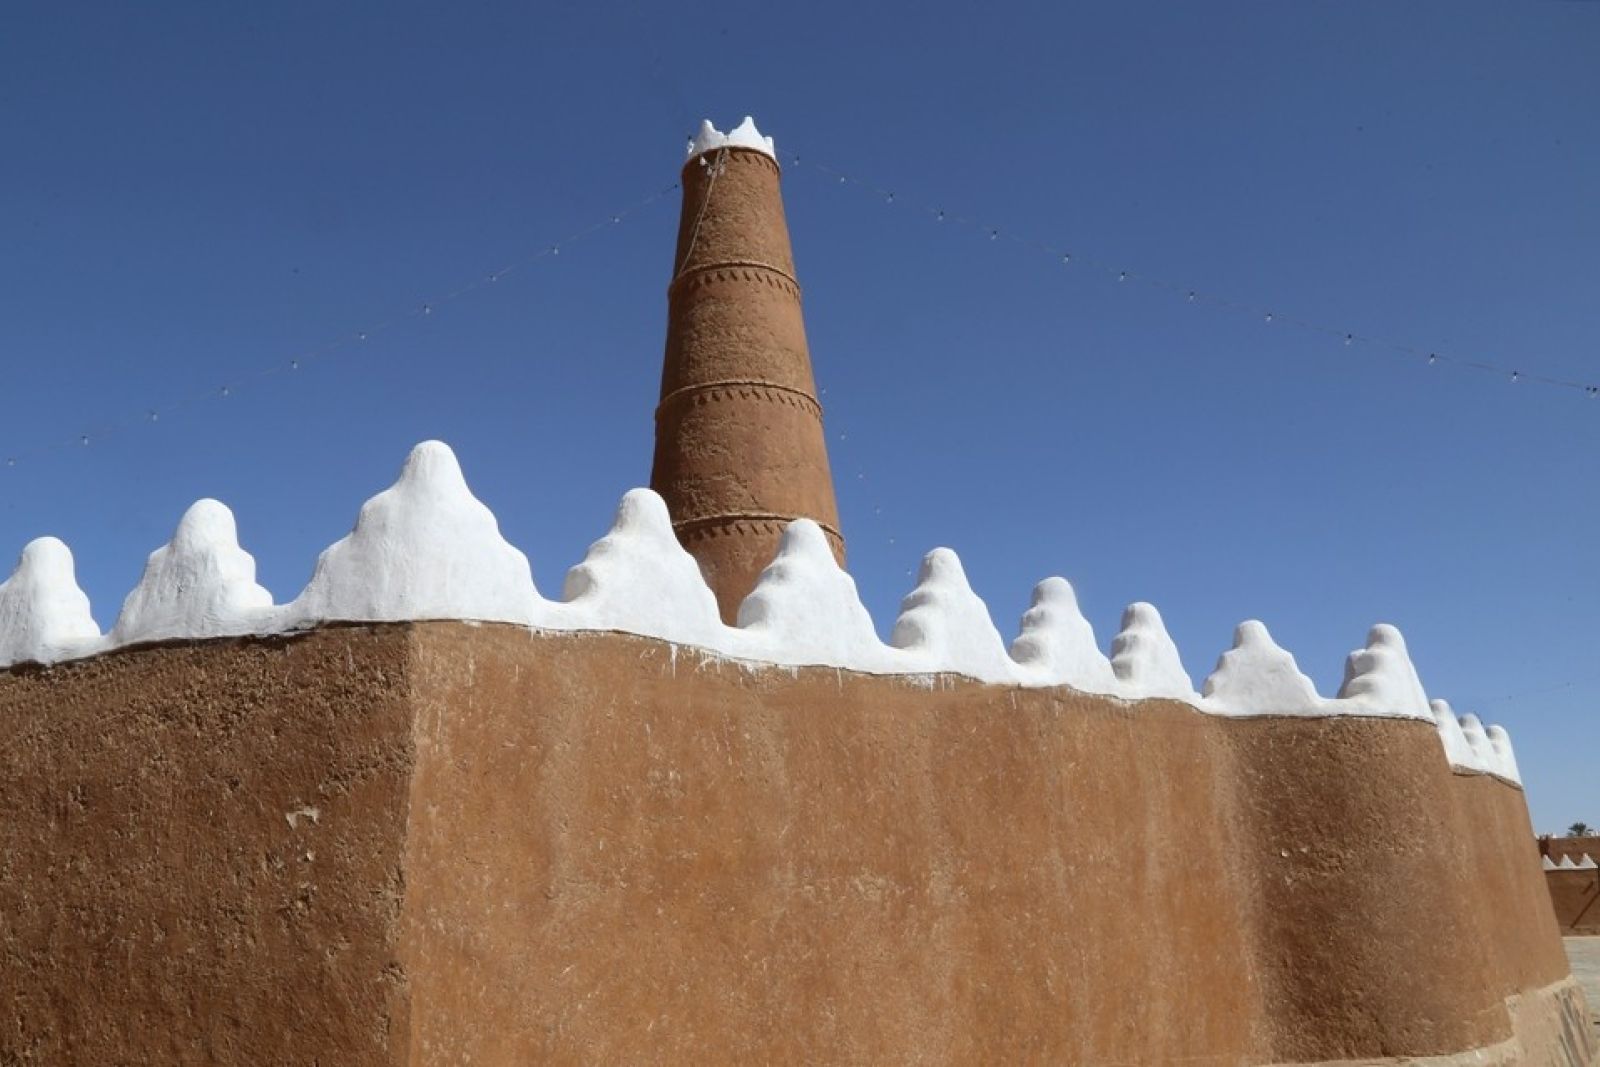 Moschee in traditioneller Lehmarchitektur der Nadschd-Region (Najd)